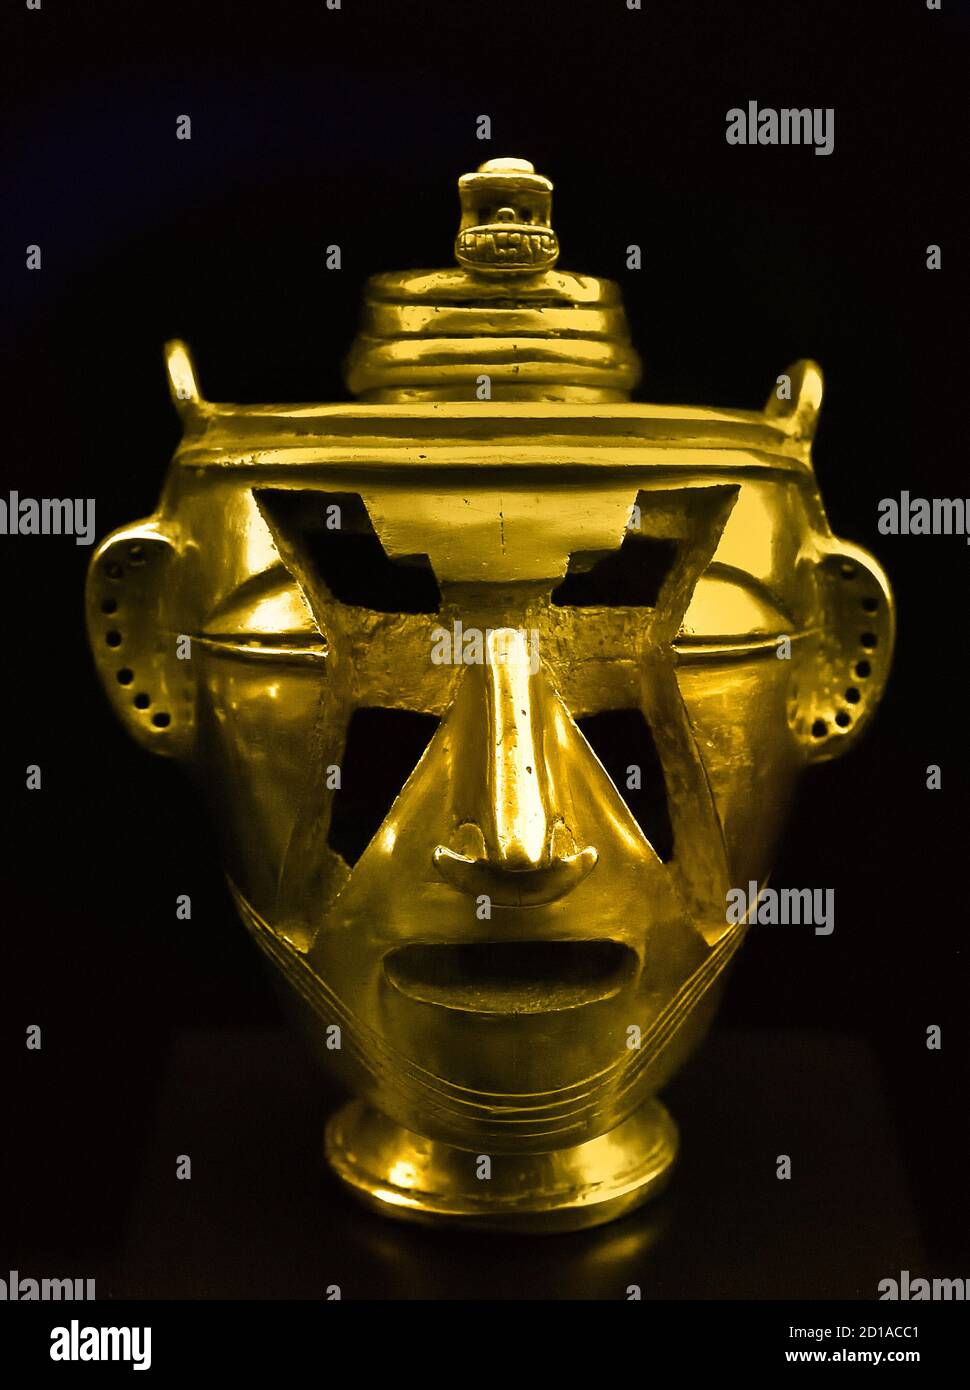 La civilisation Quimbaya (cacique) était une culture pré-colombienne de Colombie, 540 - 640 AD Amérique, américaine, ( noté pour leur travail d'or caractérisé par la précision technique et les conceptions détaillées.) Statuette dorée Banque D'Images